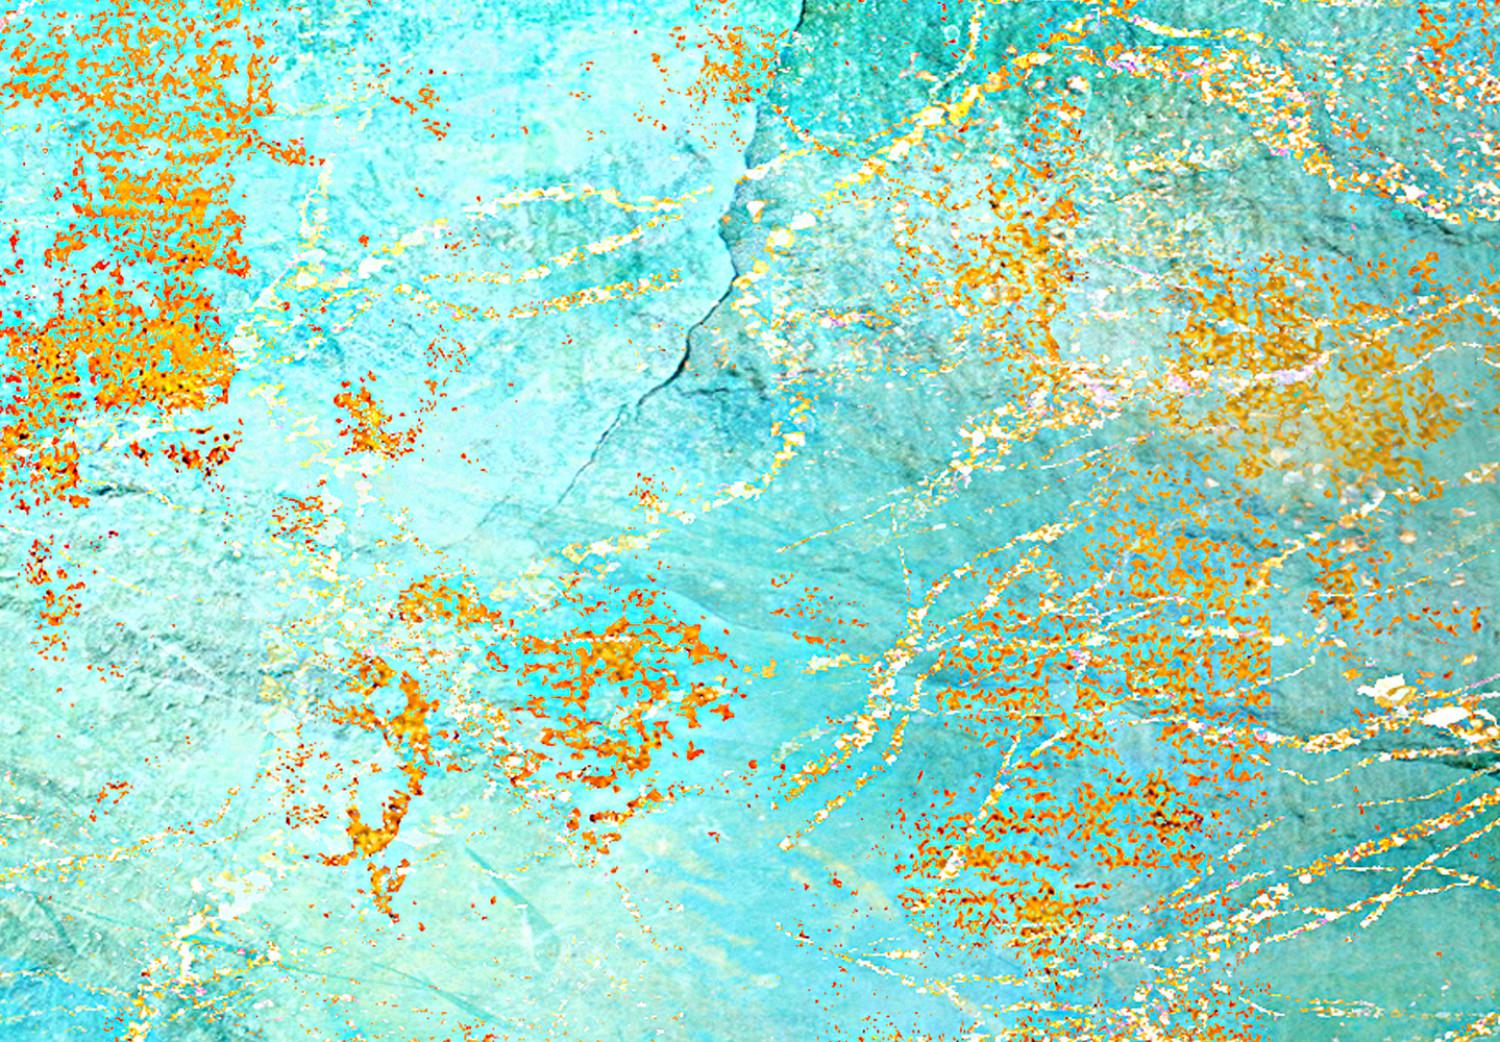 Cuadro decorativo Océano esmeralda (1 unidad) ancho - fondo azul abstracto